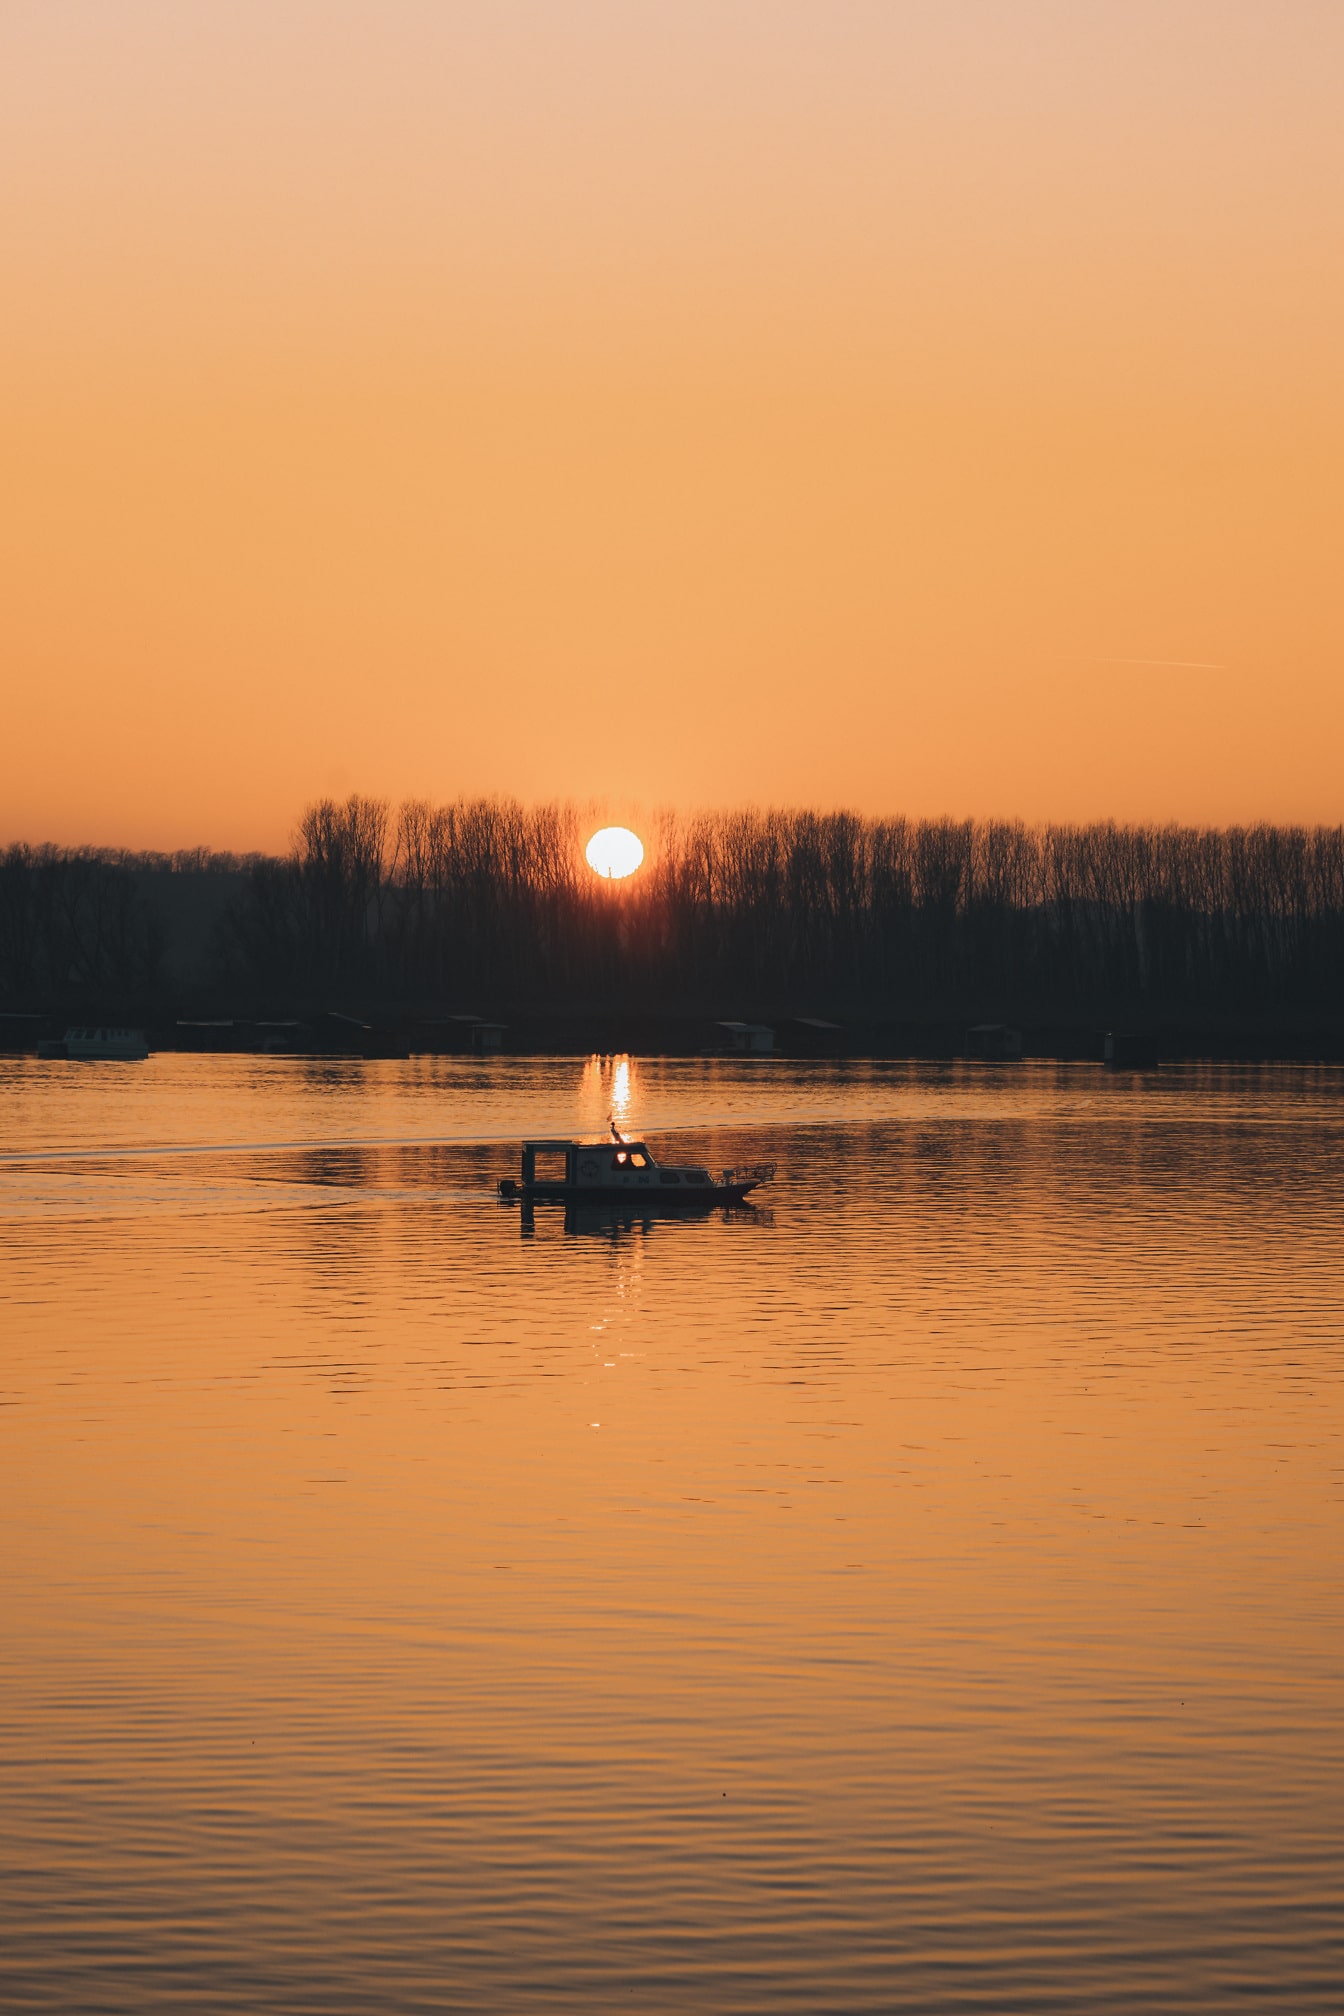 ภาพเงาของเรือประมงในยามพระอาทิตย์ตกเหนือทะเลสาบ